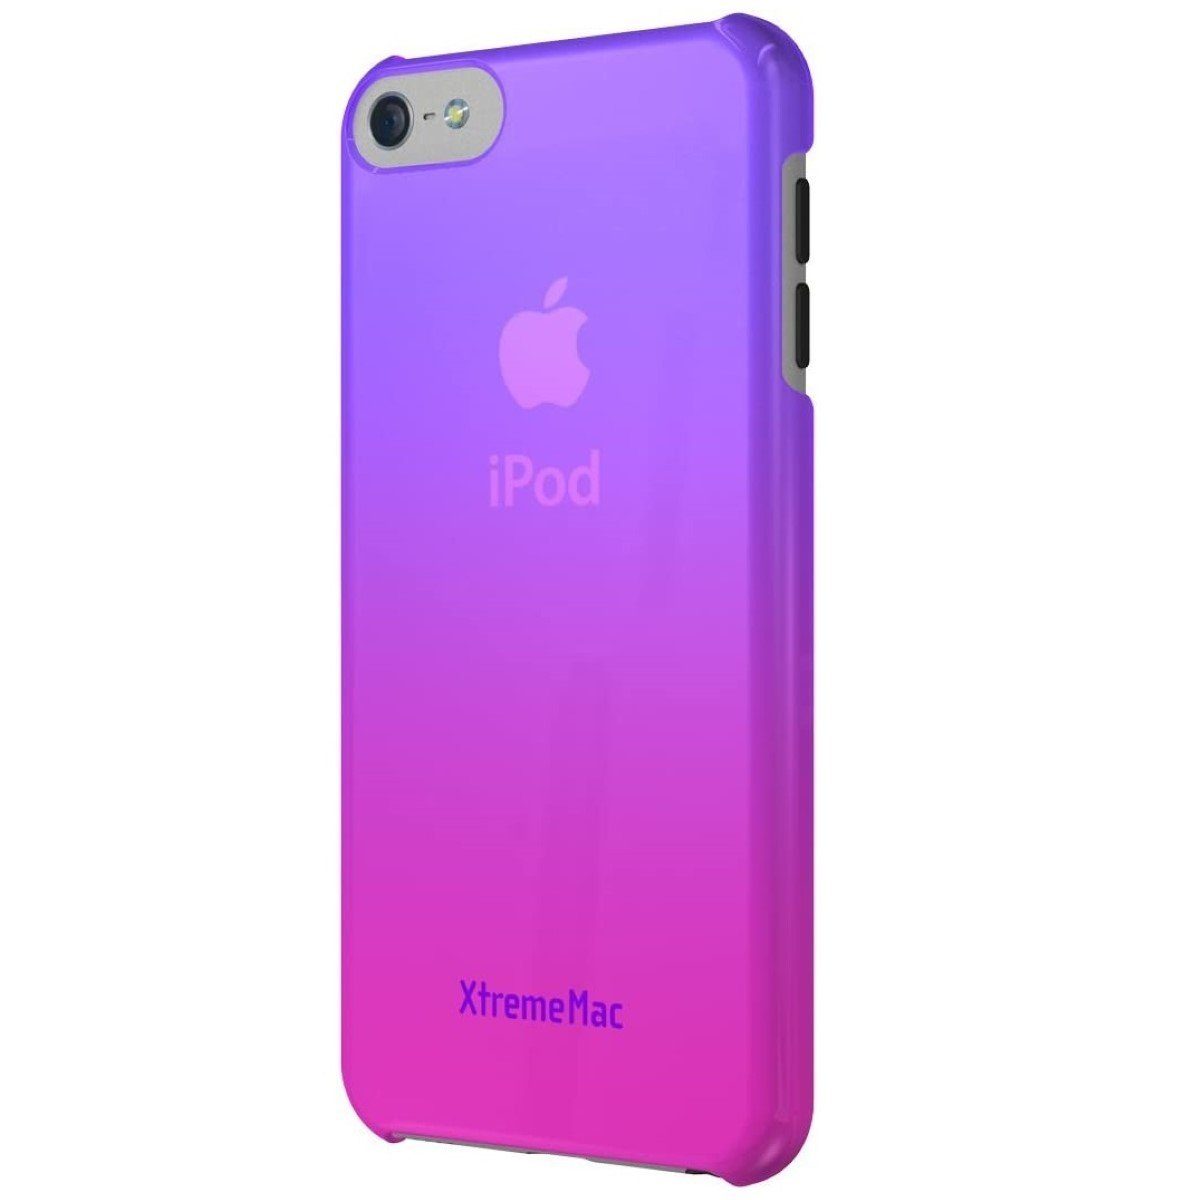 XtremeMac Handyhülle Fade Schutz-Hülle Cover Case Tasche Pink,  Steuerungszugriff, Snap-On Case passend für Apple iPod Touch 5. 6. 7.  Generation